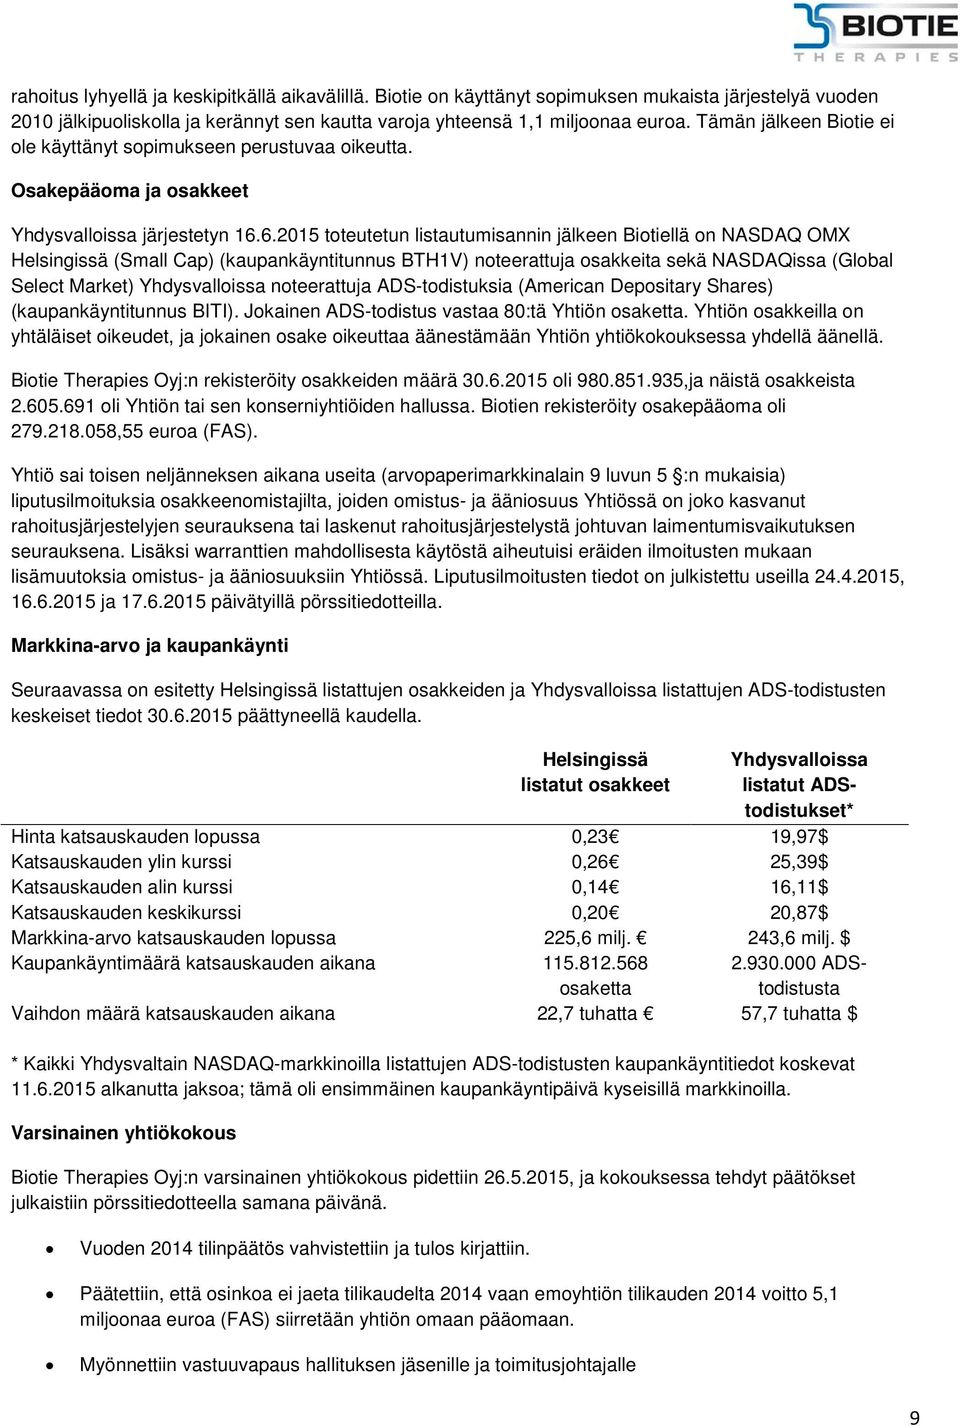 6.2015 toteutetun listautumisannin jälkeen Biotiellä on NASDAQ OMX Helsingissä (Small Cap) (kaupankäyntitunnus BTH1V) noteerattuja osakkeita sekä NASDAQissa (Global Select Market) Yhdysvalloissa